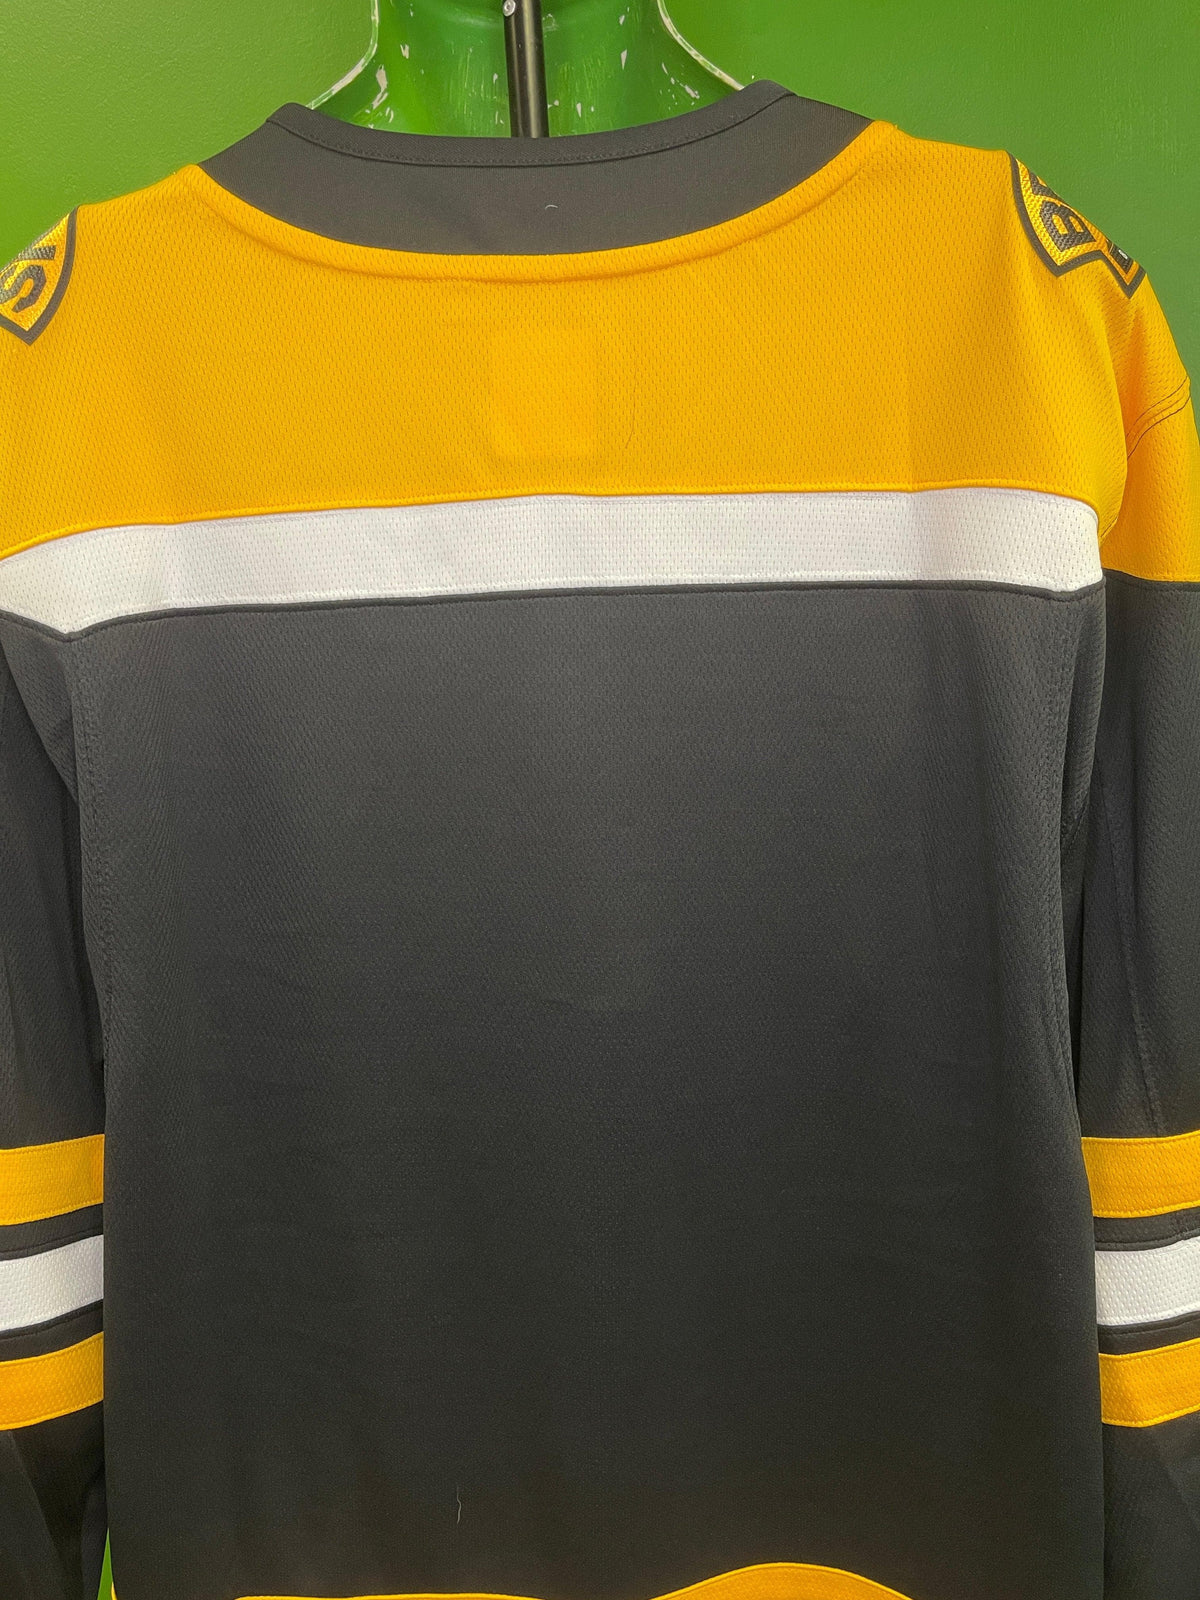 NHL Boston Bruins Fanatics Lace-Up Stitched Hockey Jersey Men's X-Large NWT